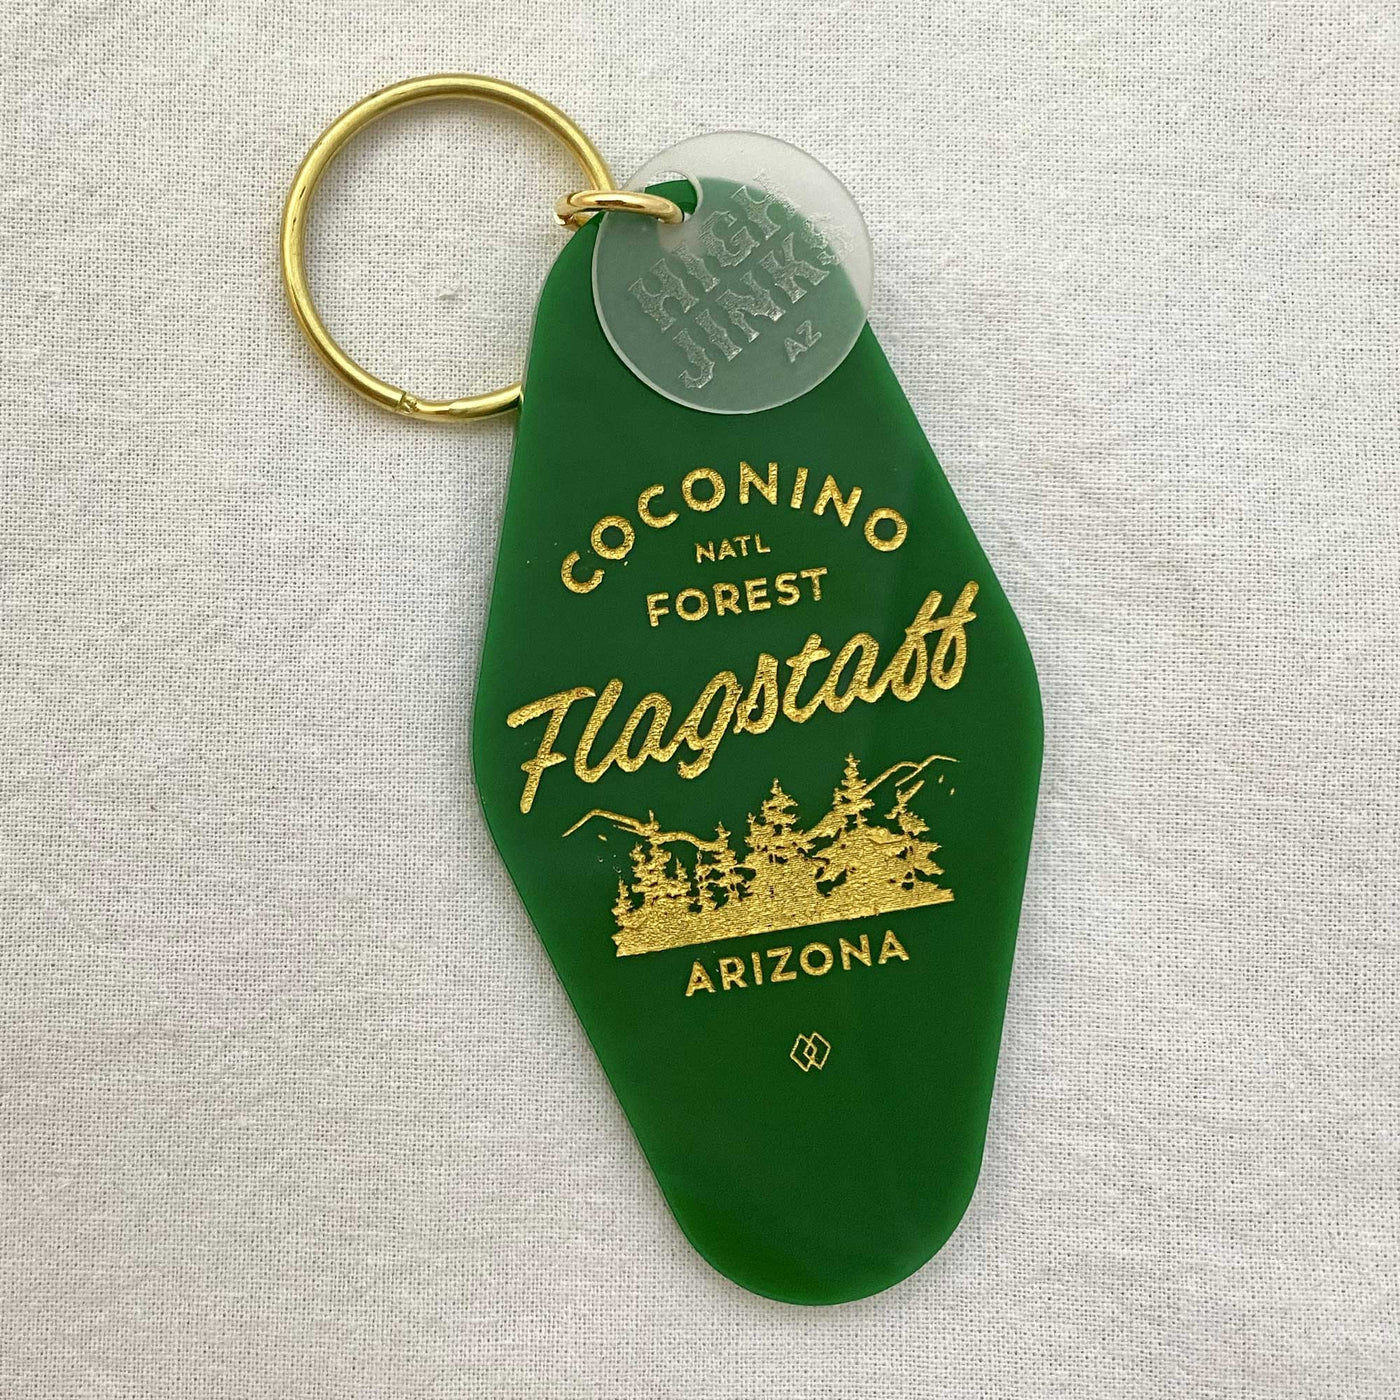 Flagstaff Forest Local Love Key Tag